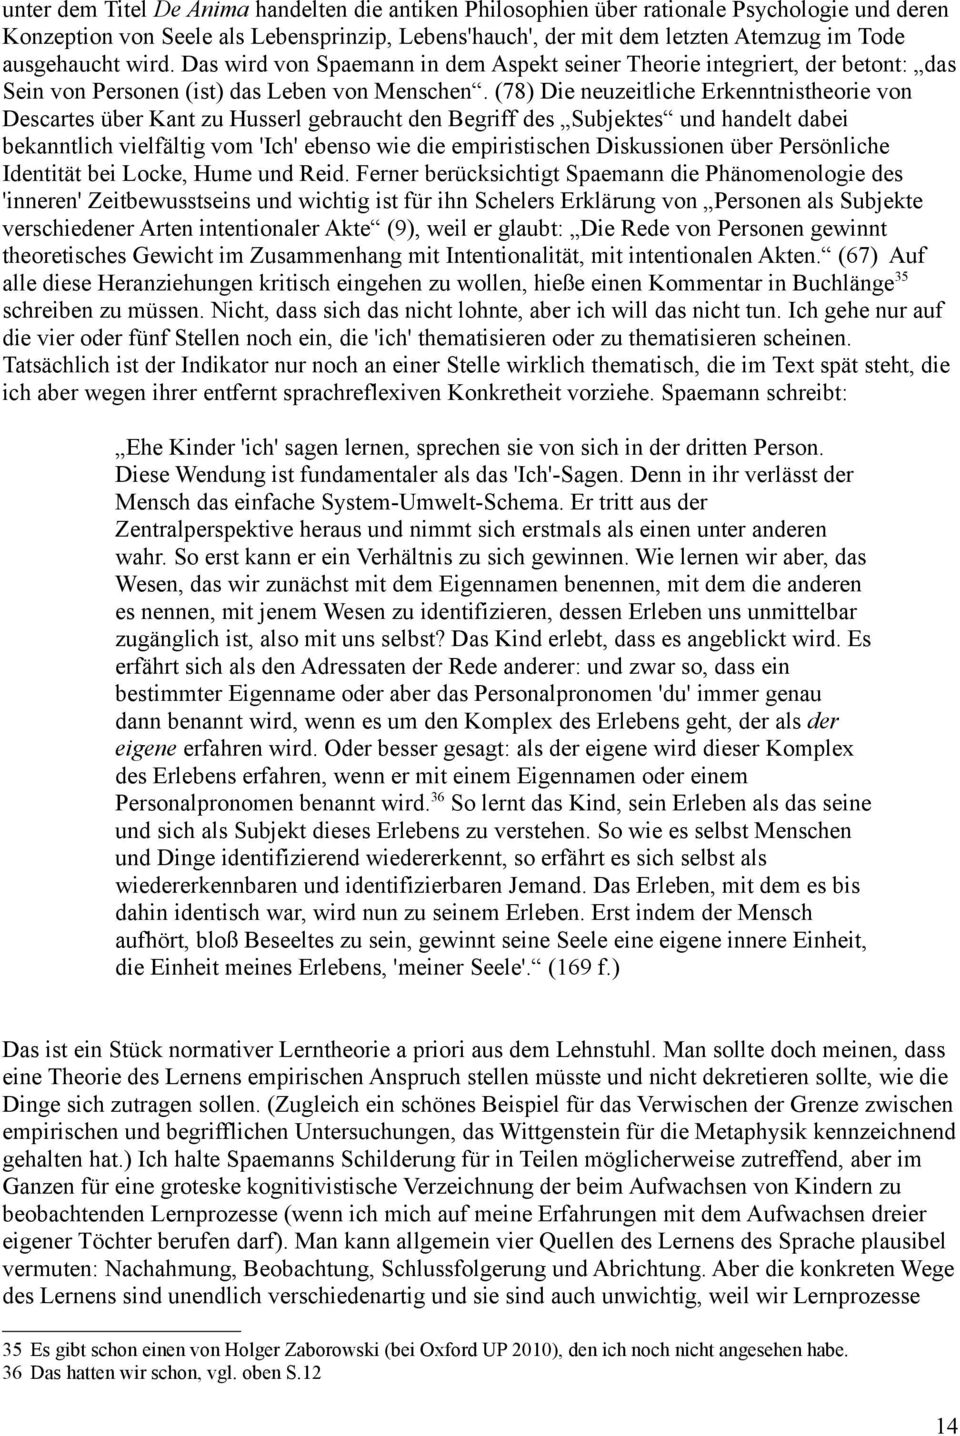 (78) Die neuzeitliche Erkenntnistheorie von Descartes über Kant zu Husserl gebraucht den Begriff des Subjektes und handelt dabei bekanntlich vielfältig vom 'Ich' ebenso wie die empiristischen